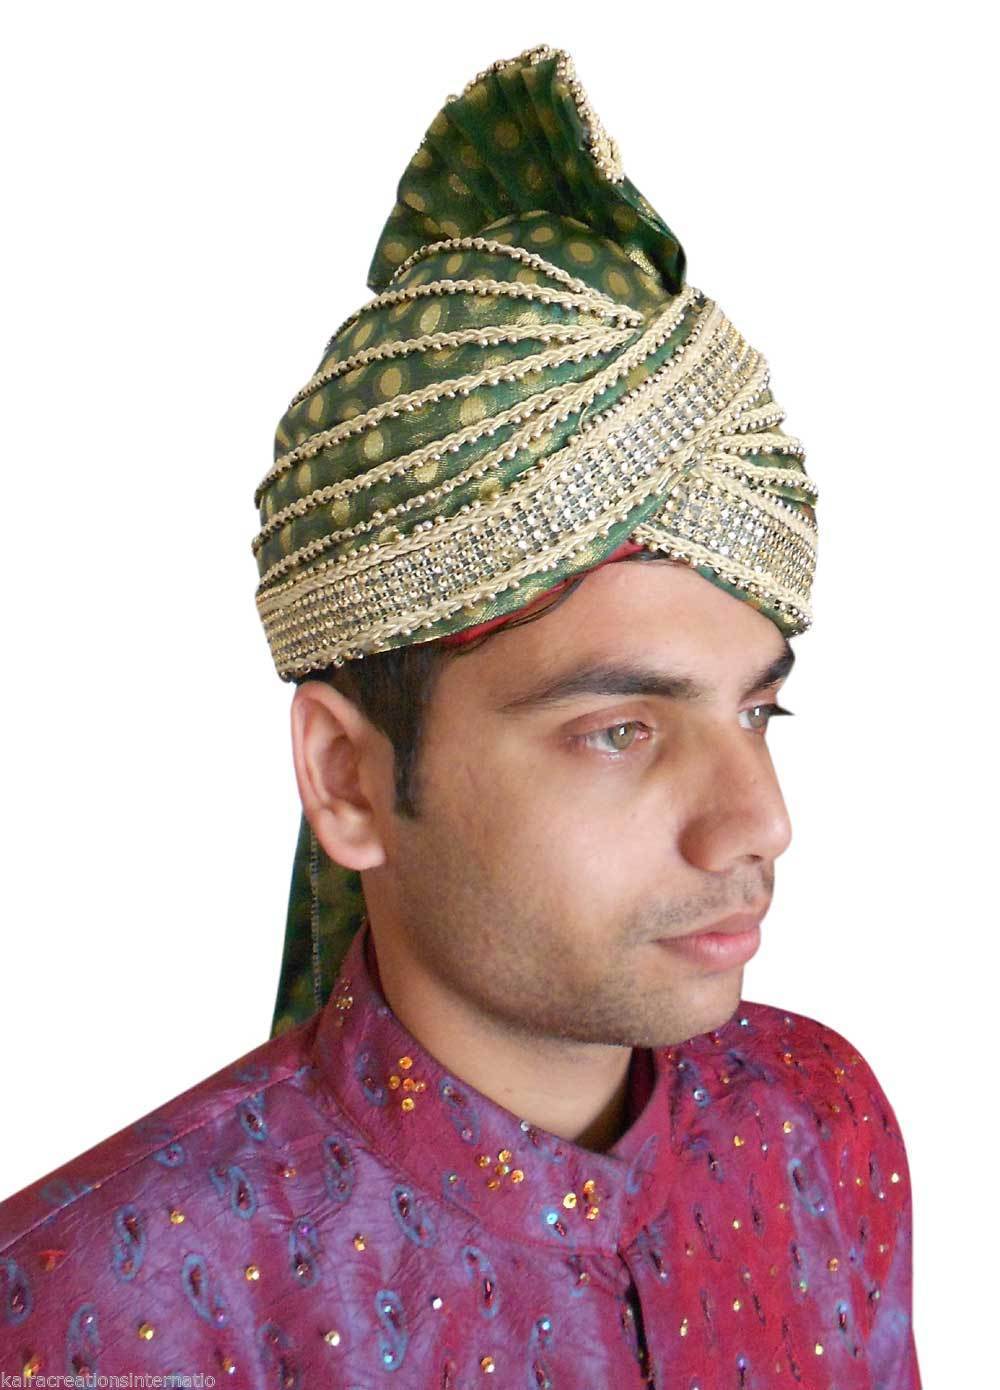 Мужской головной убор для мусульман 5 букв. Головной убор мусульман. Исламский головной убор для мужчин. Индийский мужской головной убор. Мусульманские шапки мужские.